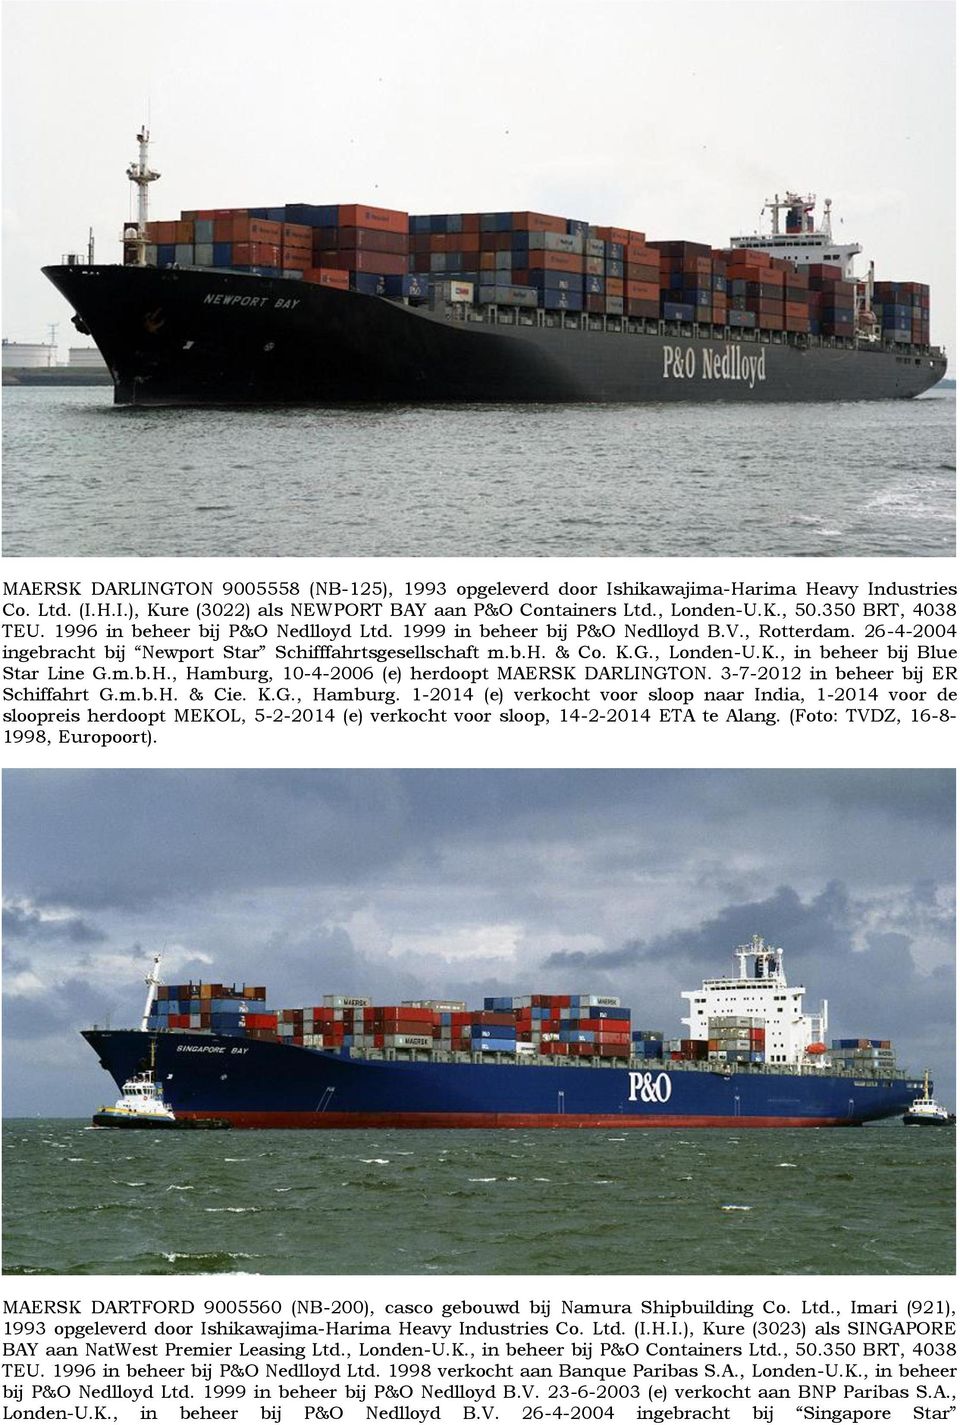 m.b.H., Hamburg, 10-4-2006 (e) herdoopt MAERSK DARLINGTON. 3-7-2012 in beheer bij ER Schiffahrt G.m.b.H. & Cie. K.G., Hamburg. 1-2014 (e) verkocht voor sloop naar India, 1-2014 voor de sloopreis herdoopt MEKOL, 5-2-2014 (e) verkocht voor sloop, 14-2-2014 ETA te Alang.